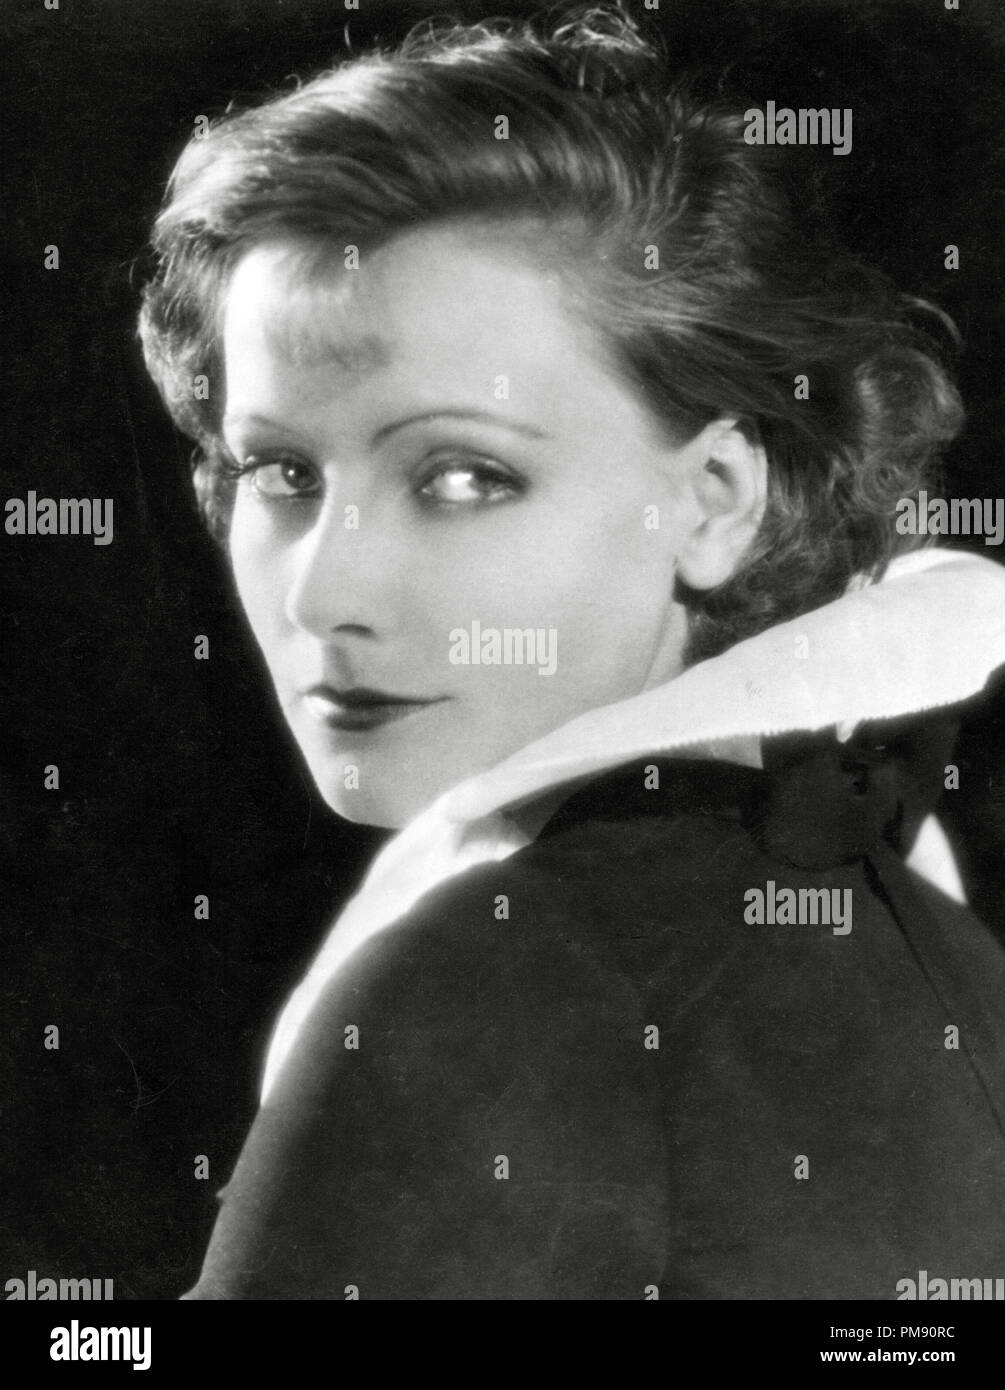 (Archivierung klassische Kino - Greta Garbo Retrospektive) Greta Garbo", dem Fleisch und dem Teufel" 1926 MGM Datei Referenz # 31523 056 THA Stockfoto